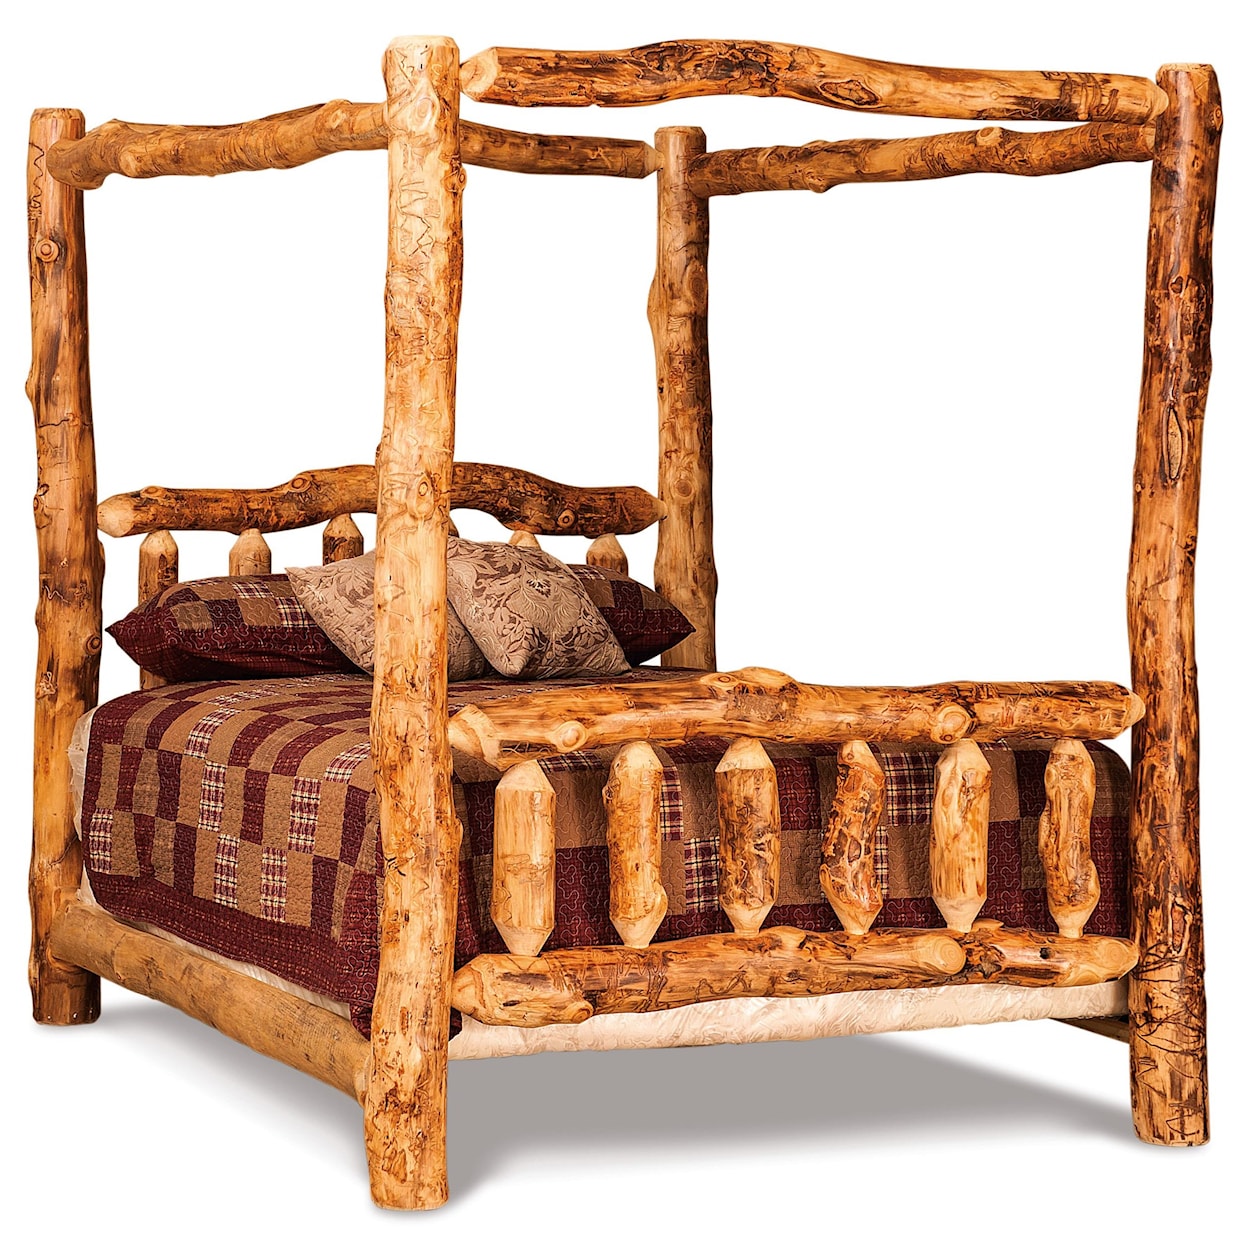 Fireside Log Furniture Log Bedroom King Canopy Bed